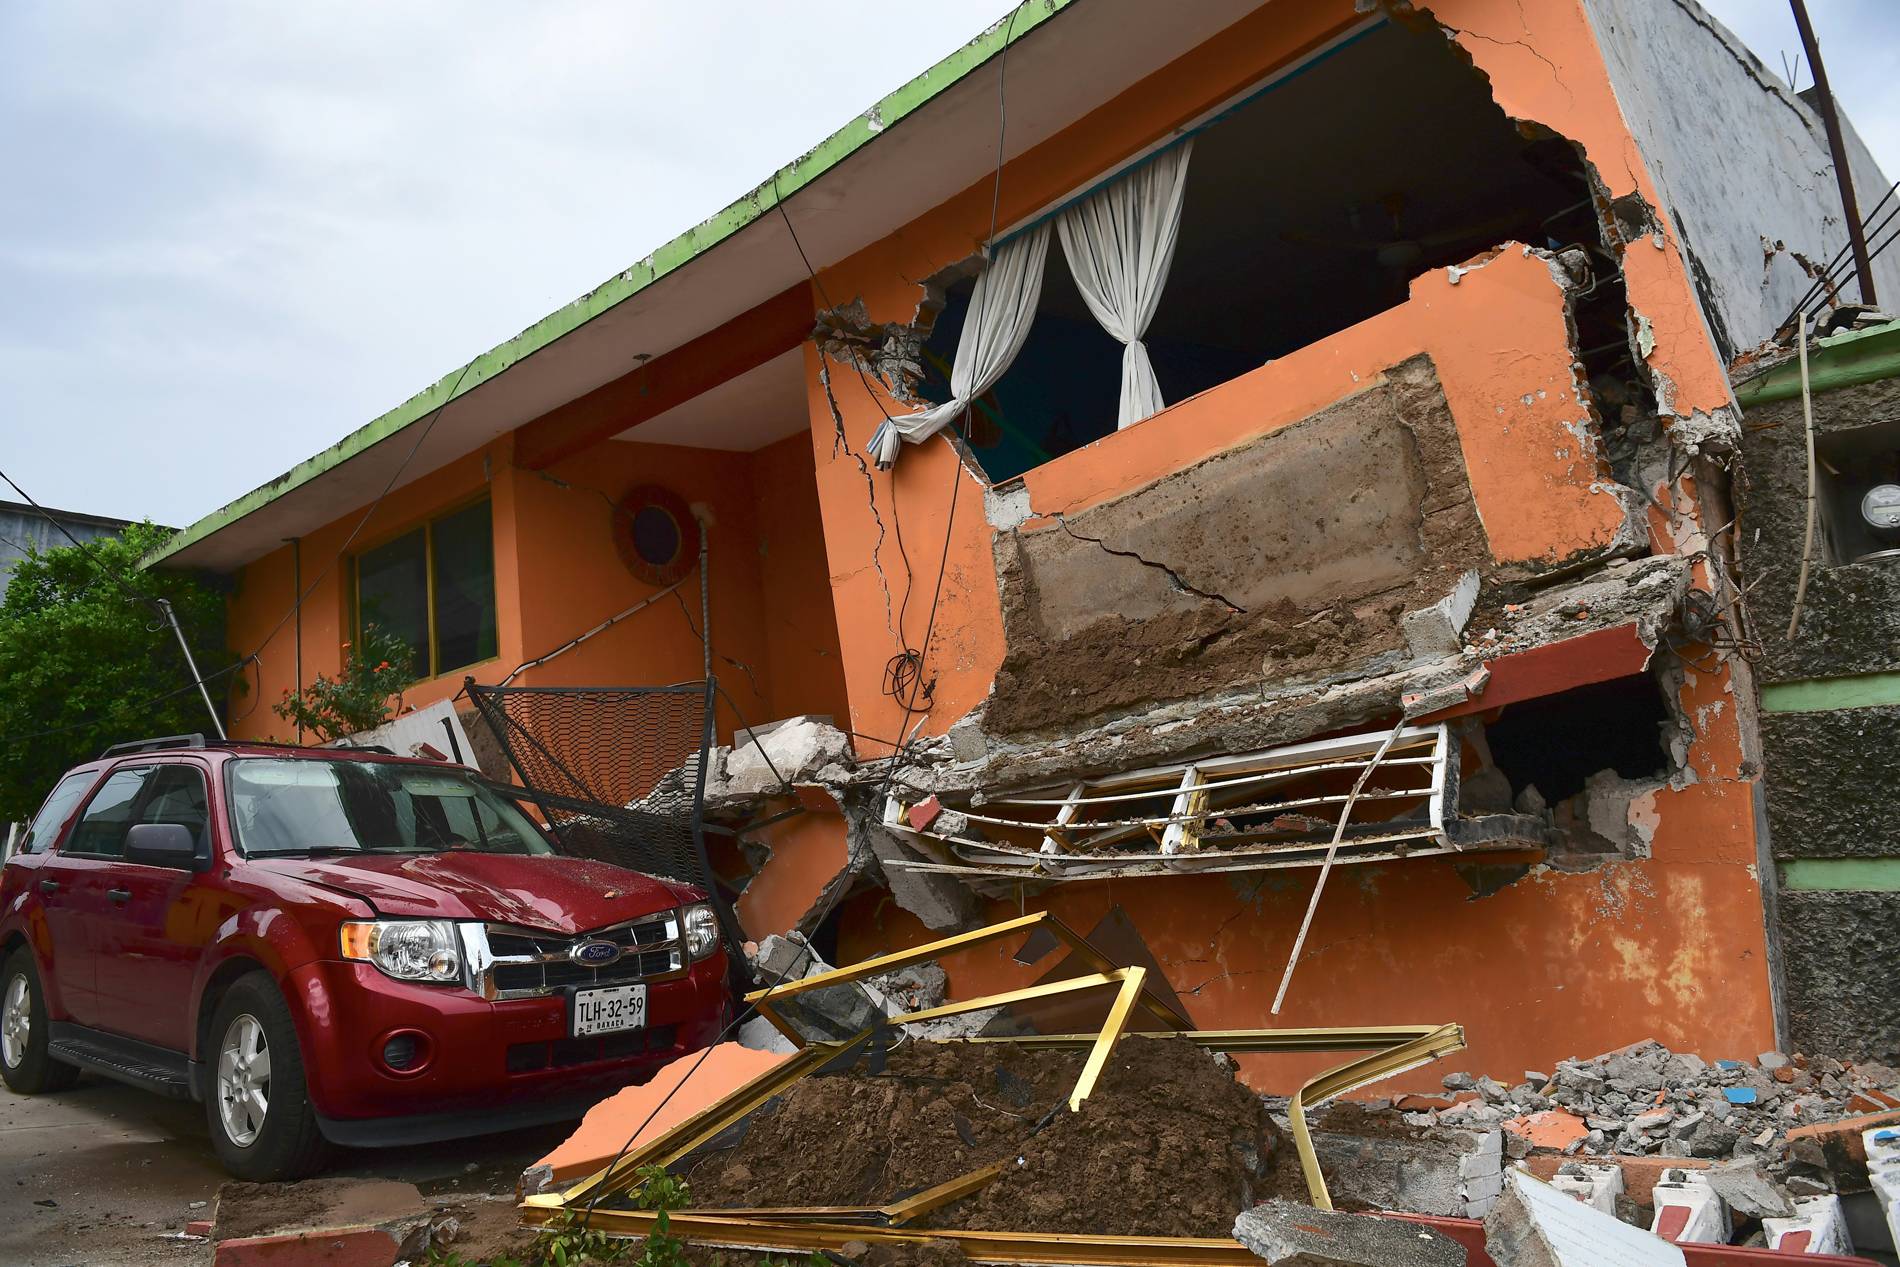 Casa gravemente danificada pelo terremoto, em Juchitan, Oaxaca, no México